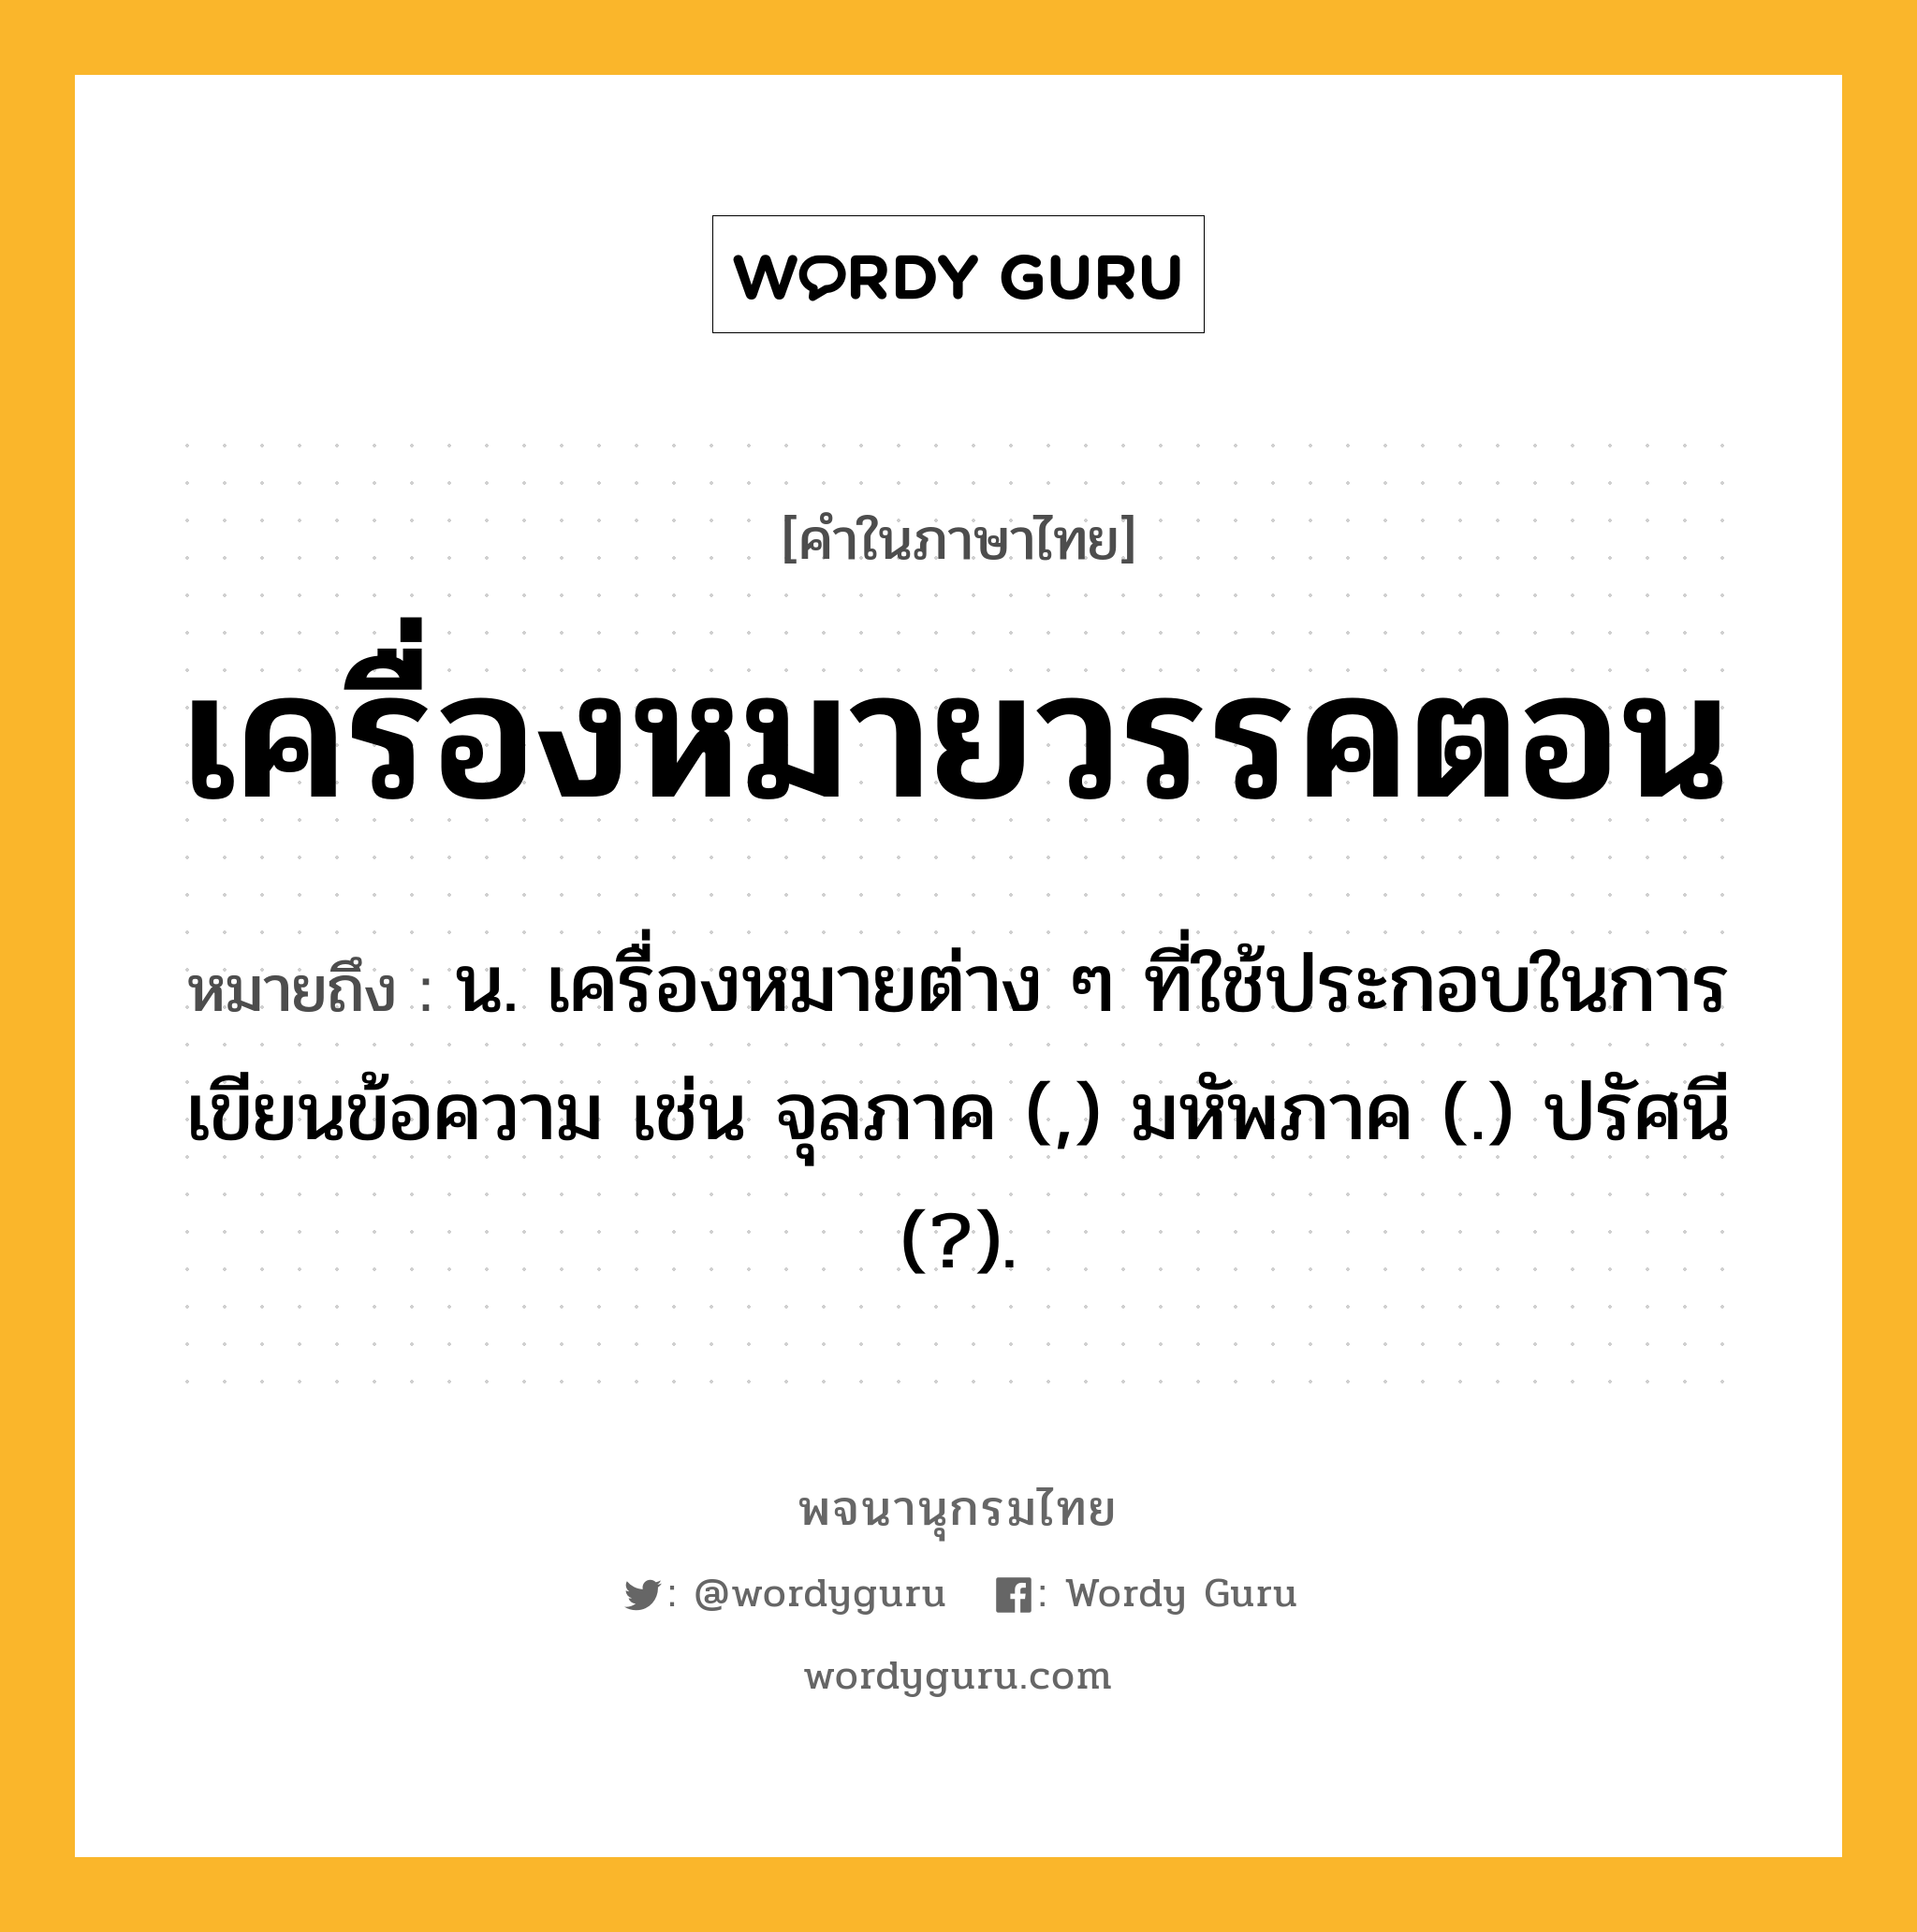 เครื่องหมายวรรคตอน หมายถึงอะไร?, คำในภาษาไทย เครื่องหมายวรรคตอน หมายถึง น. เครื่องหมายต่าง ๆ ที่ใช้ประกอบในการเขียนข้อความ เช่น จุลภาค (,) มหัพภาค (.) ปรัศนี (?).